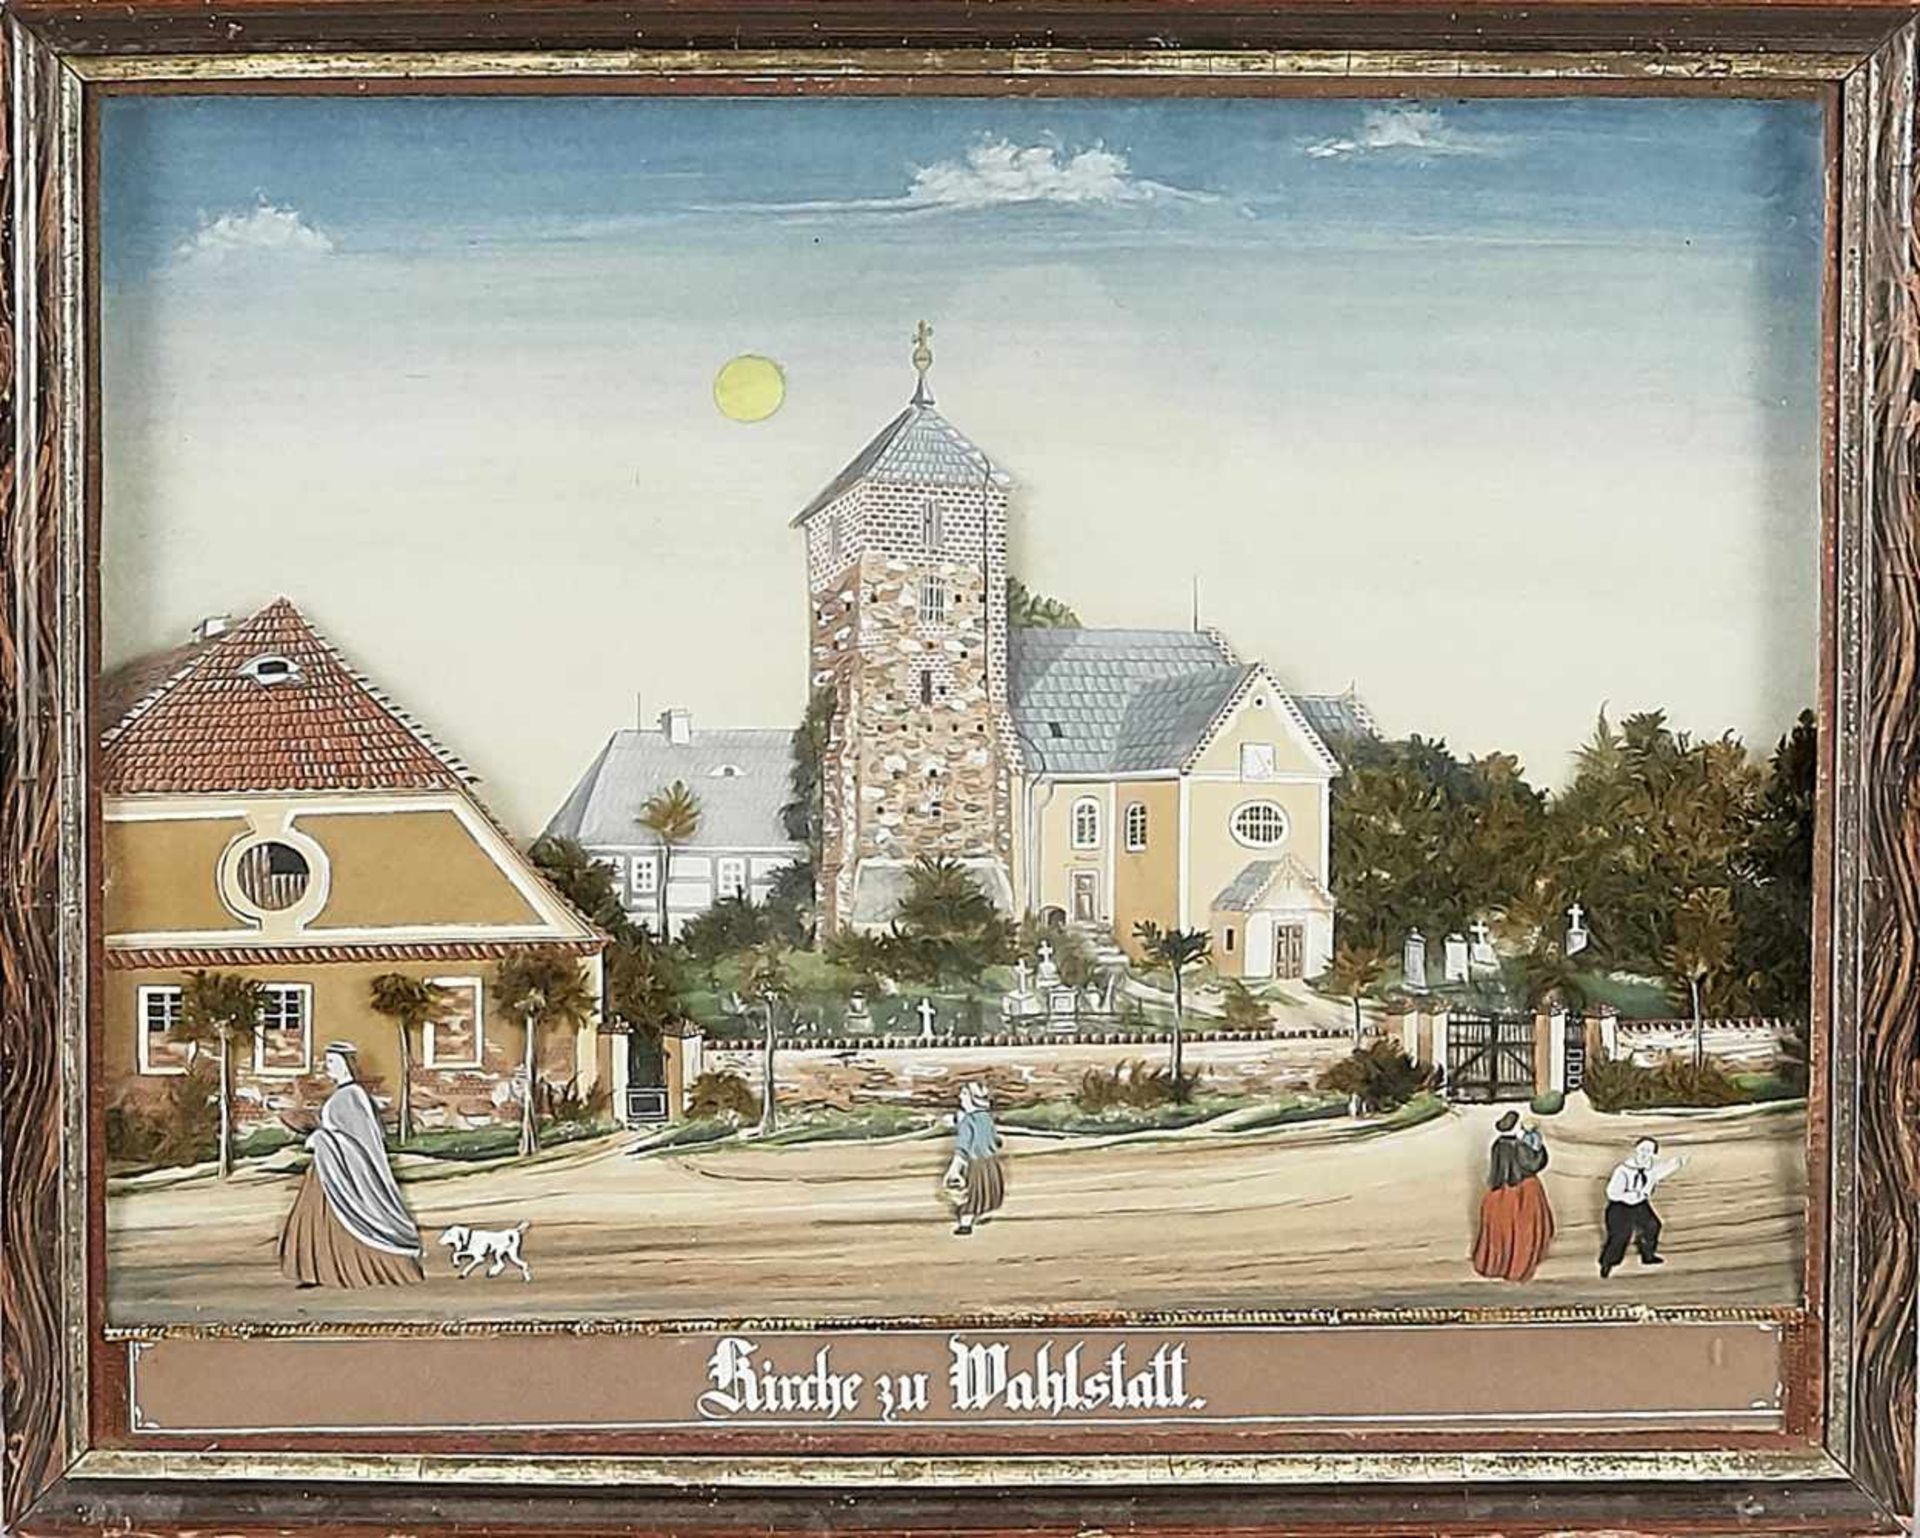 Schaukasten/Diorama, Ende 19. Jh., bez. "Kirche zu Wahlstatt". Dorfstraßenszene mit Kircheund